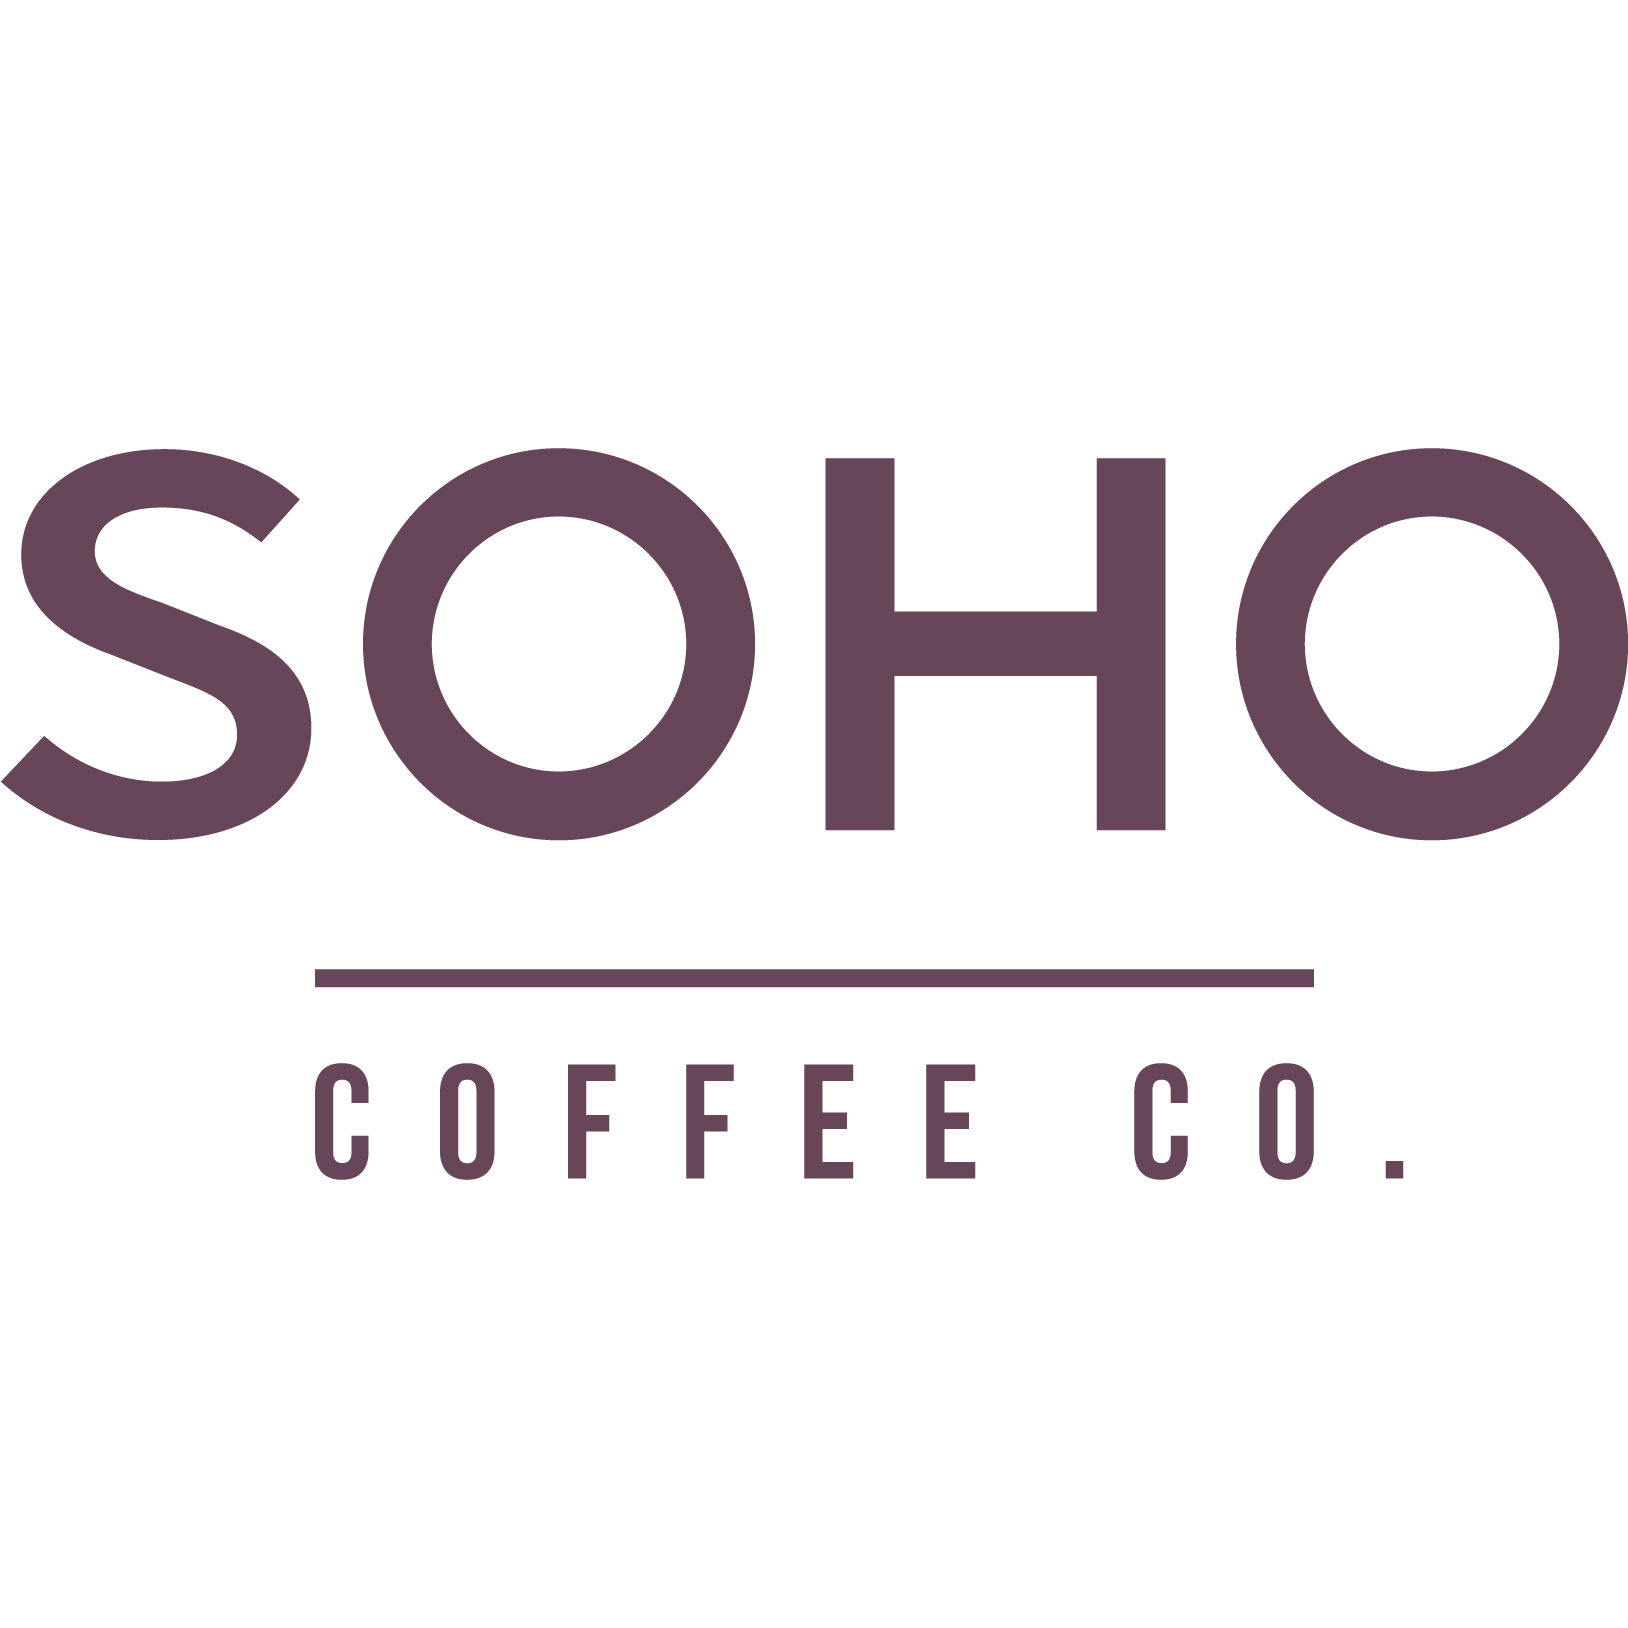 SOHO Coffee - Bath, Somerset BA1 1RR - 01225 430022 | ShowMeLocal.com